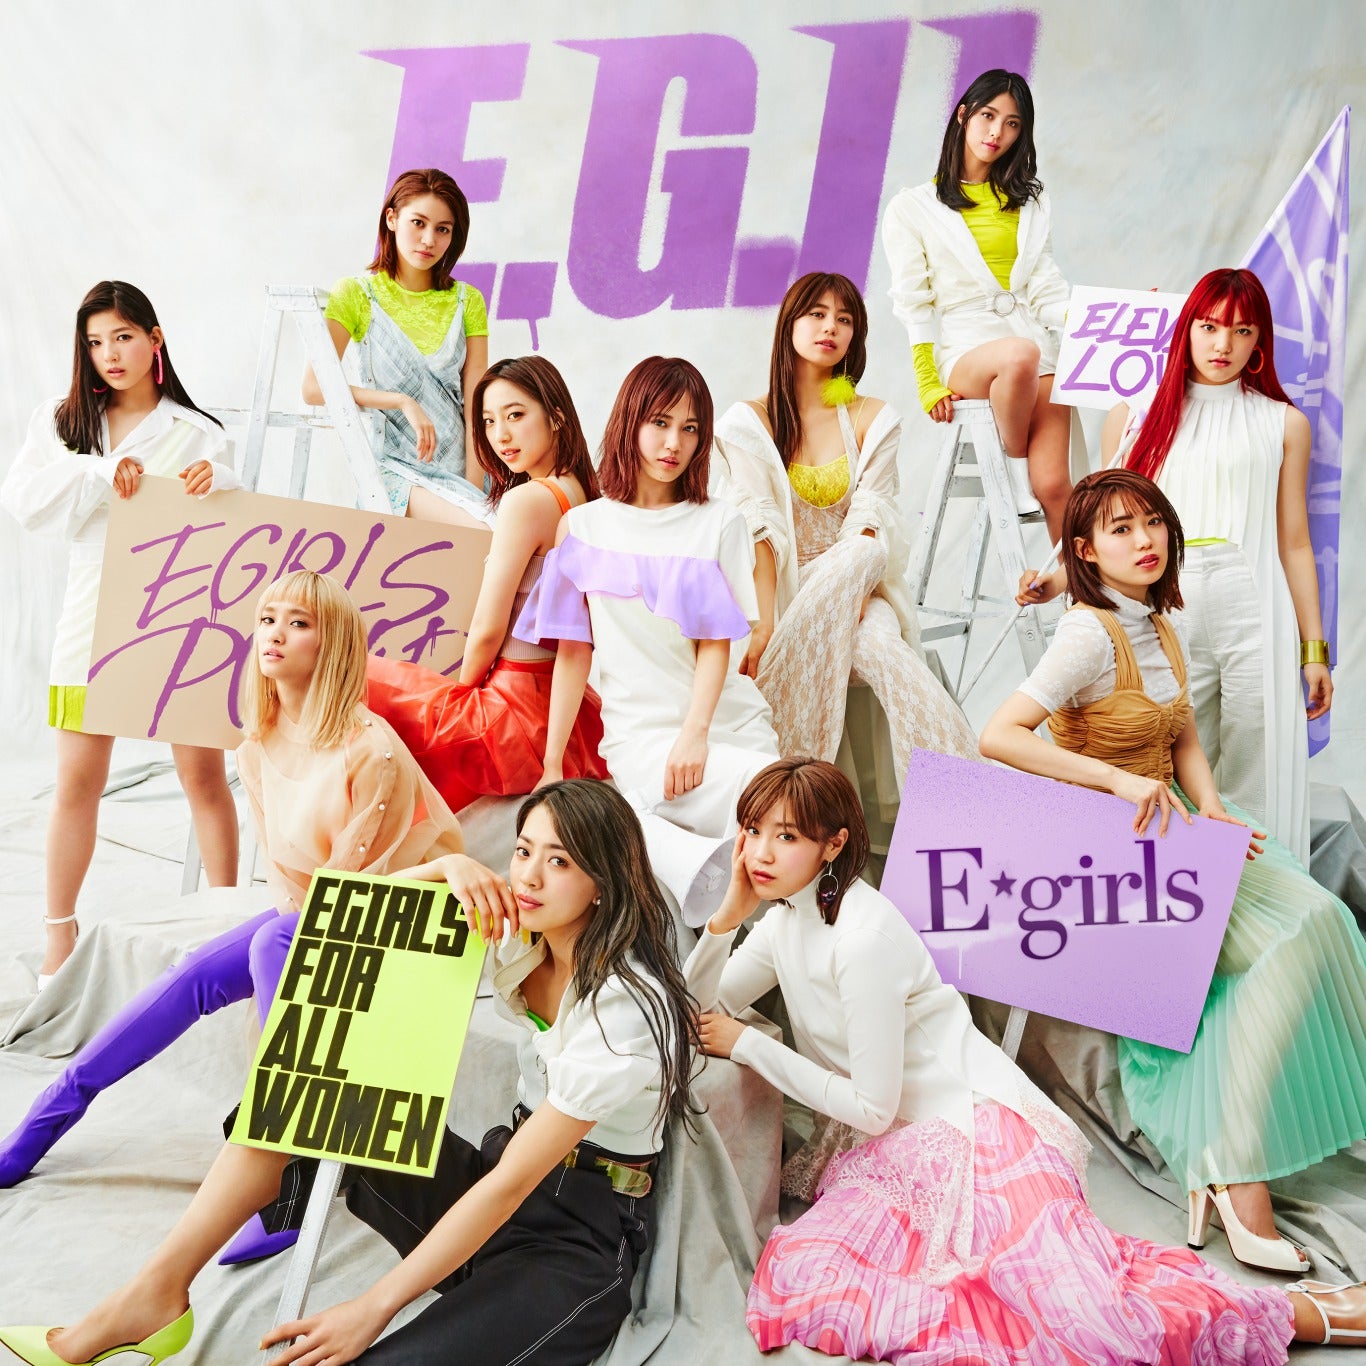 E Girls E G 11 リレーインタビューvol 5 佐藤晴美 リーダーになってグループを客観視したことで メンバーをもっと好きになれた モデルプレス